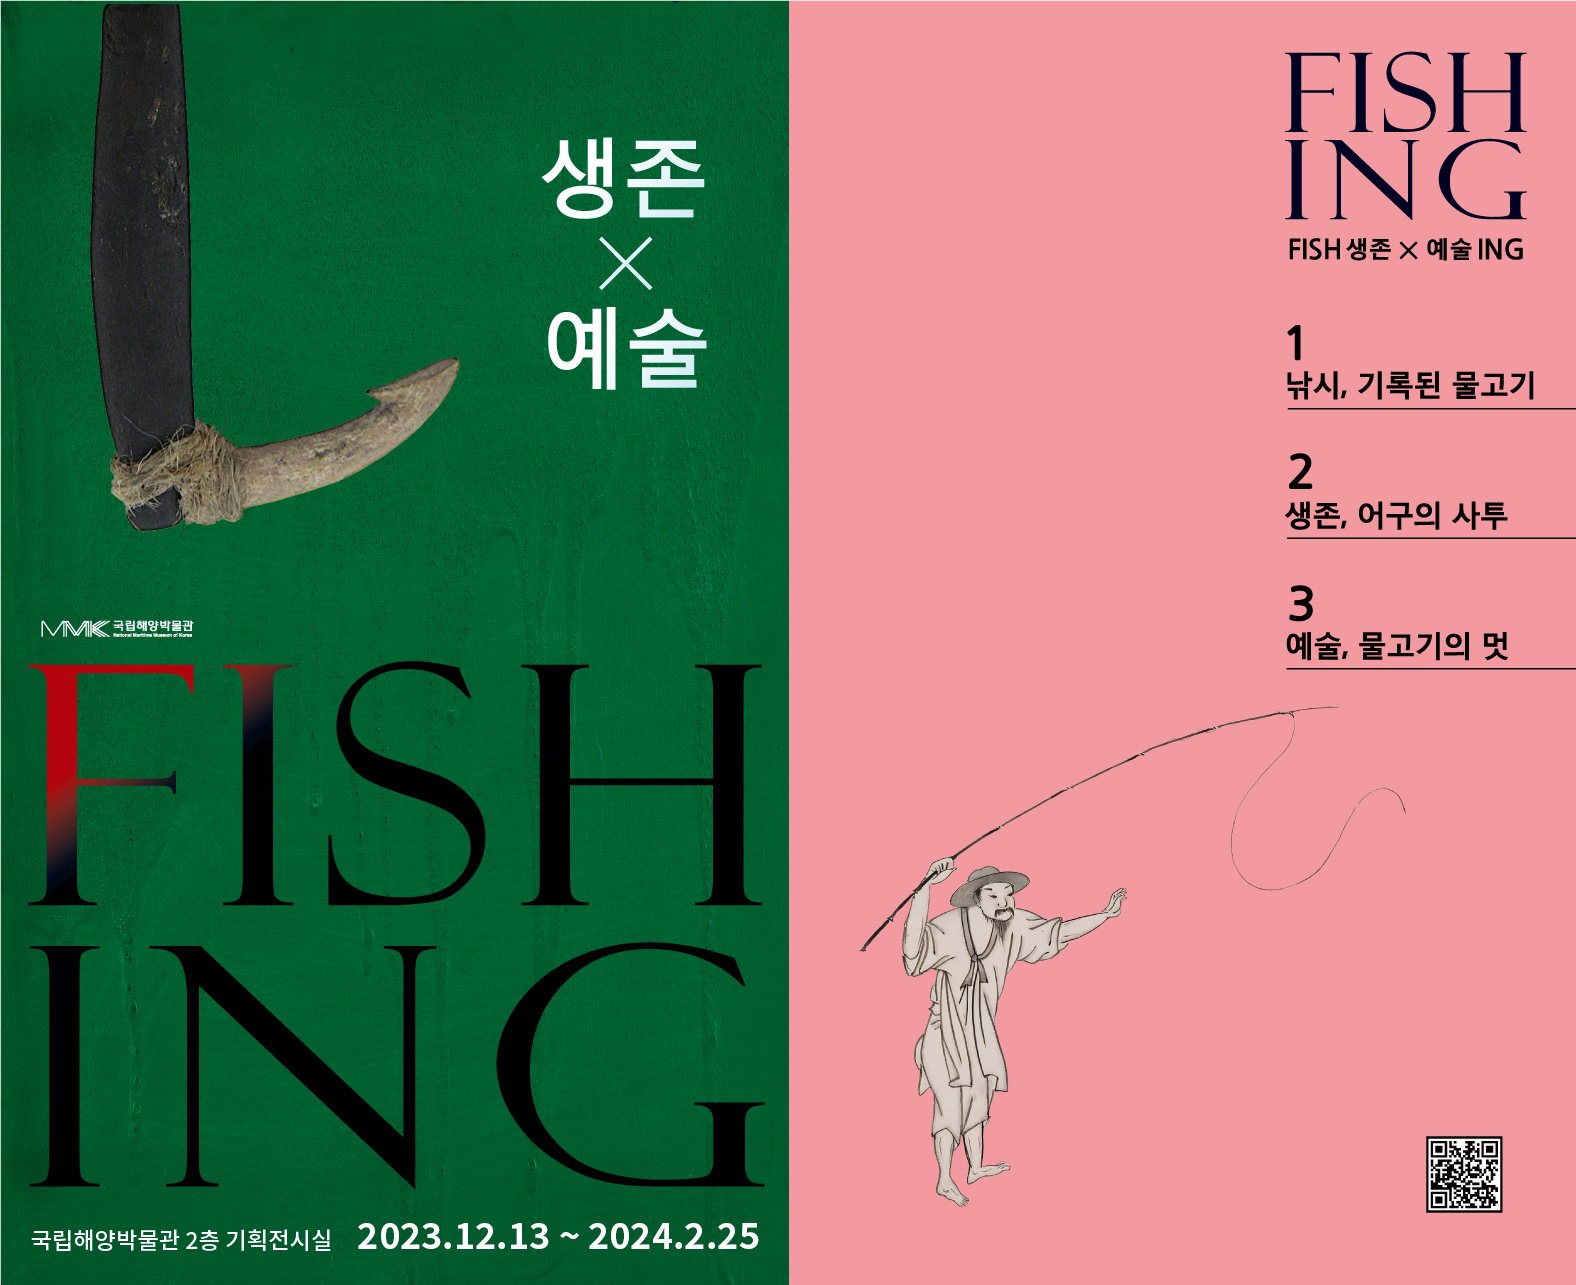 피싱 : FISH 생존 × 예술 ING, 2023년 12월 13일부터 2024년 2월 25일까지 국립해양박물관 2층 기획전시실에서 진행됩니다.
1 낚시, 기록된 물고기, 2 생존, 어구의 사투, 3 예술, 물고기의 멋. 오른쪽 아래 큐알코드가 있다.